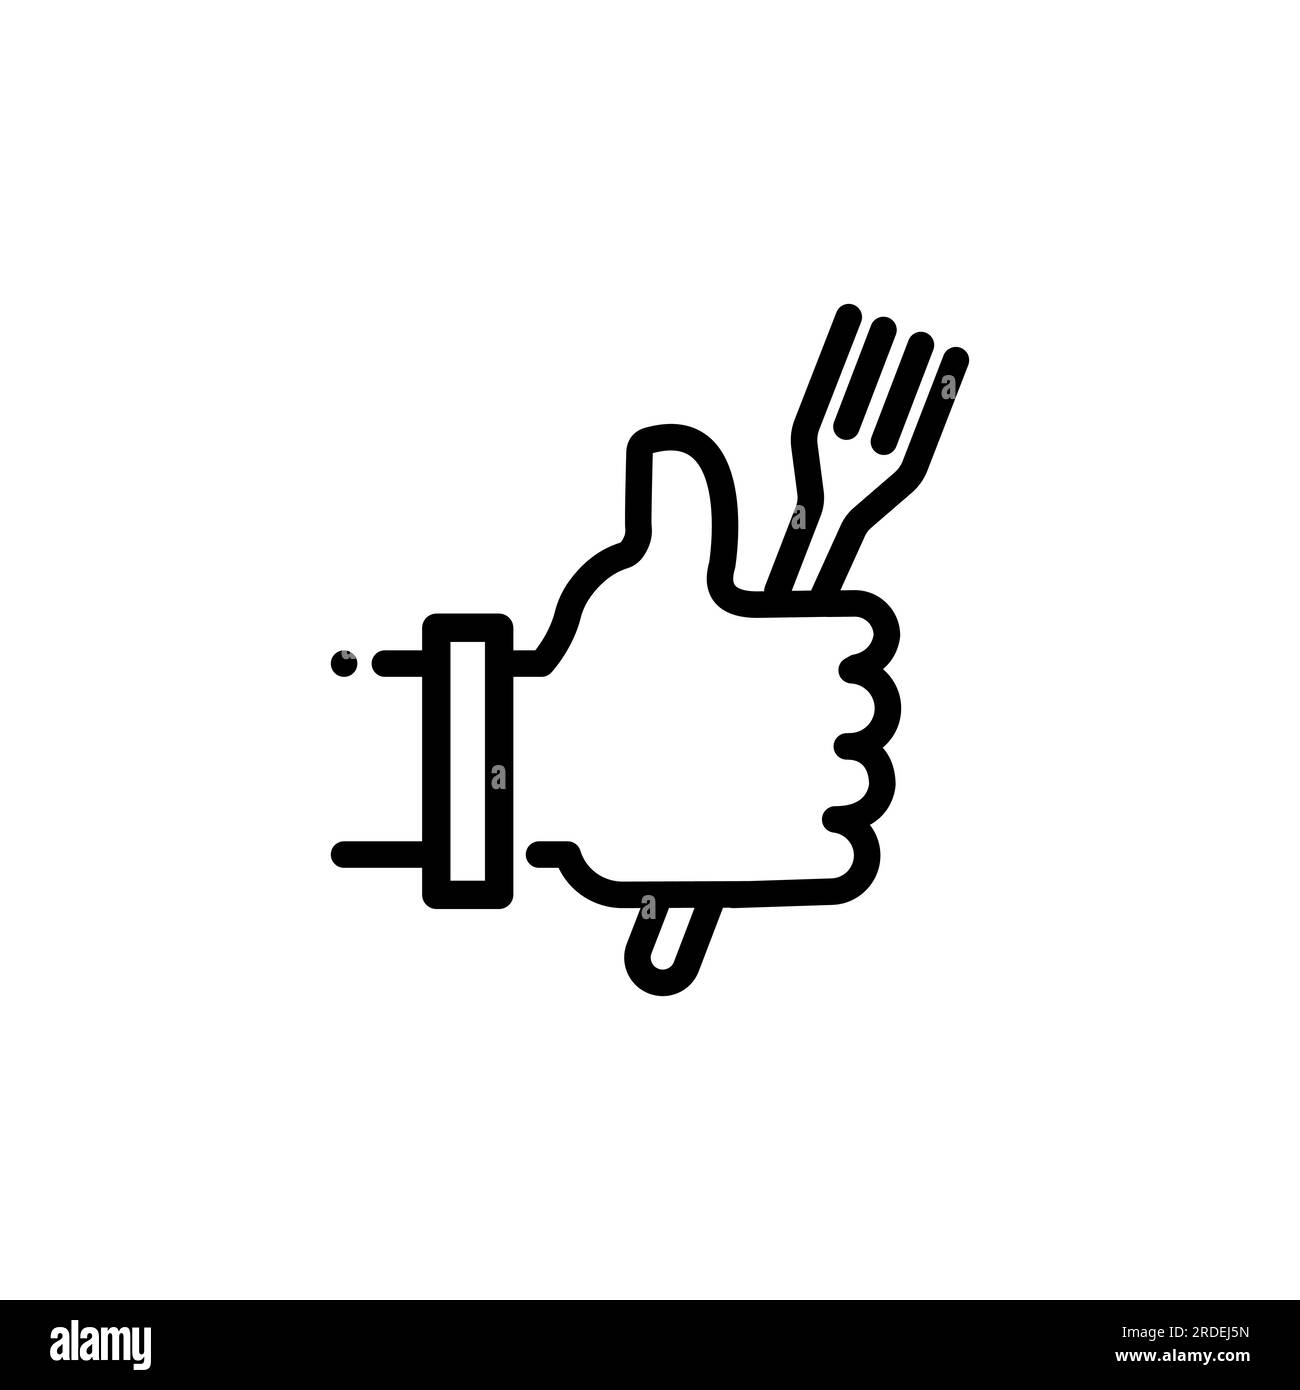 Une bonne icône alimentaire. Une main avec le pouce levé et une fourchette dans les mains. Illustration vectorielle linéaire simple sur fond blanc. Illustration de Vecteur